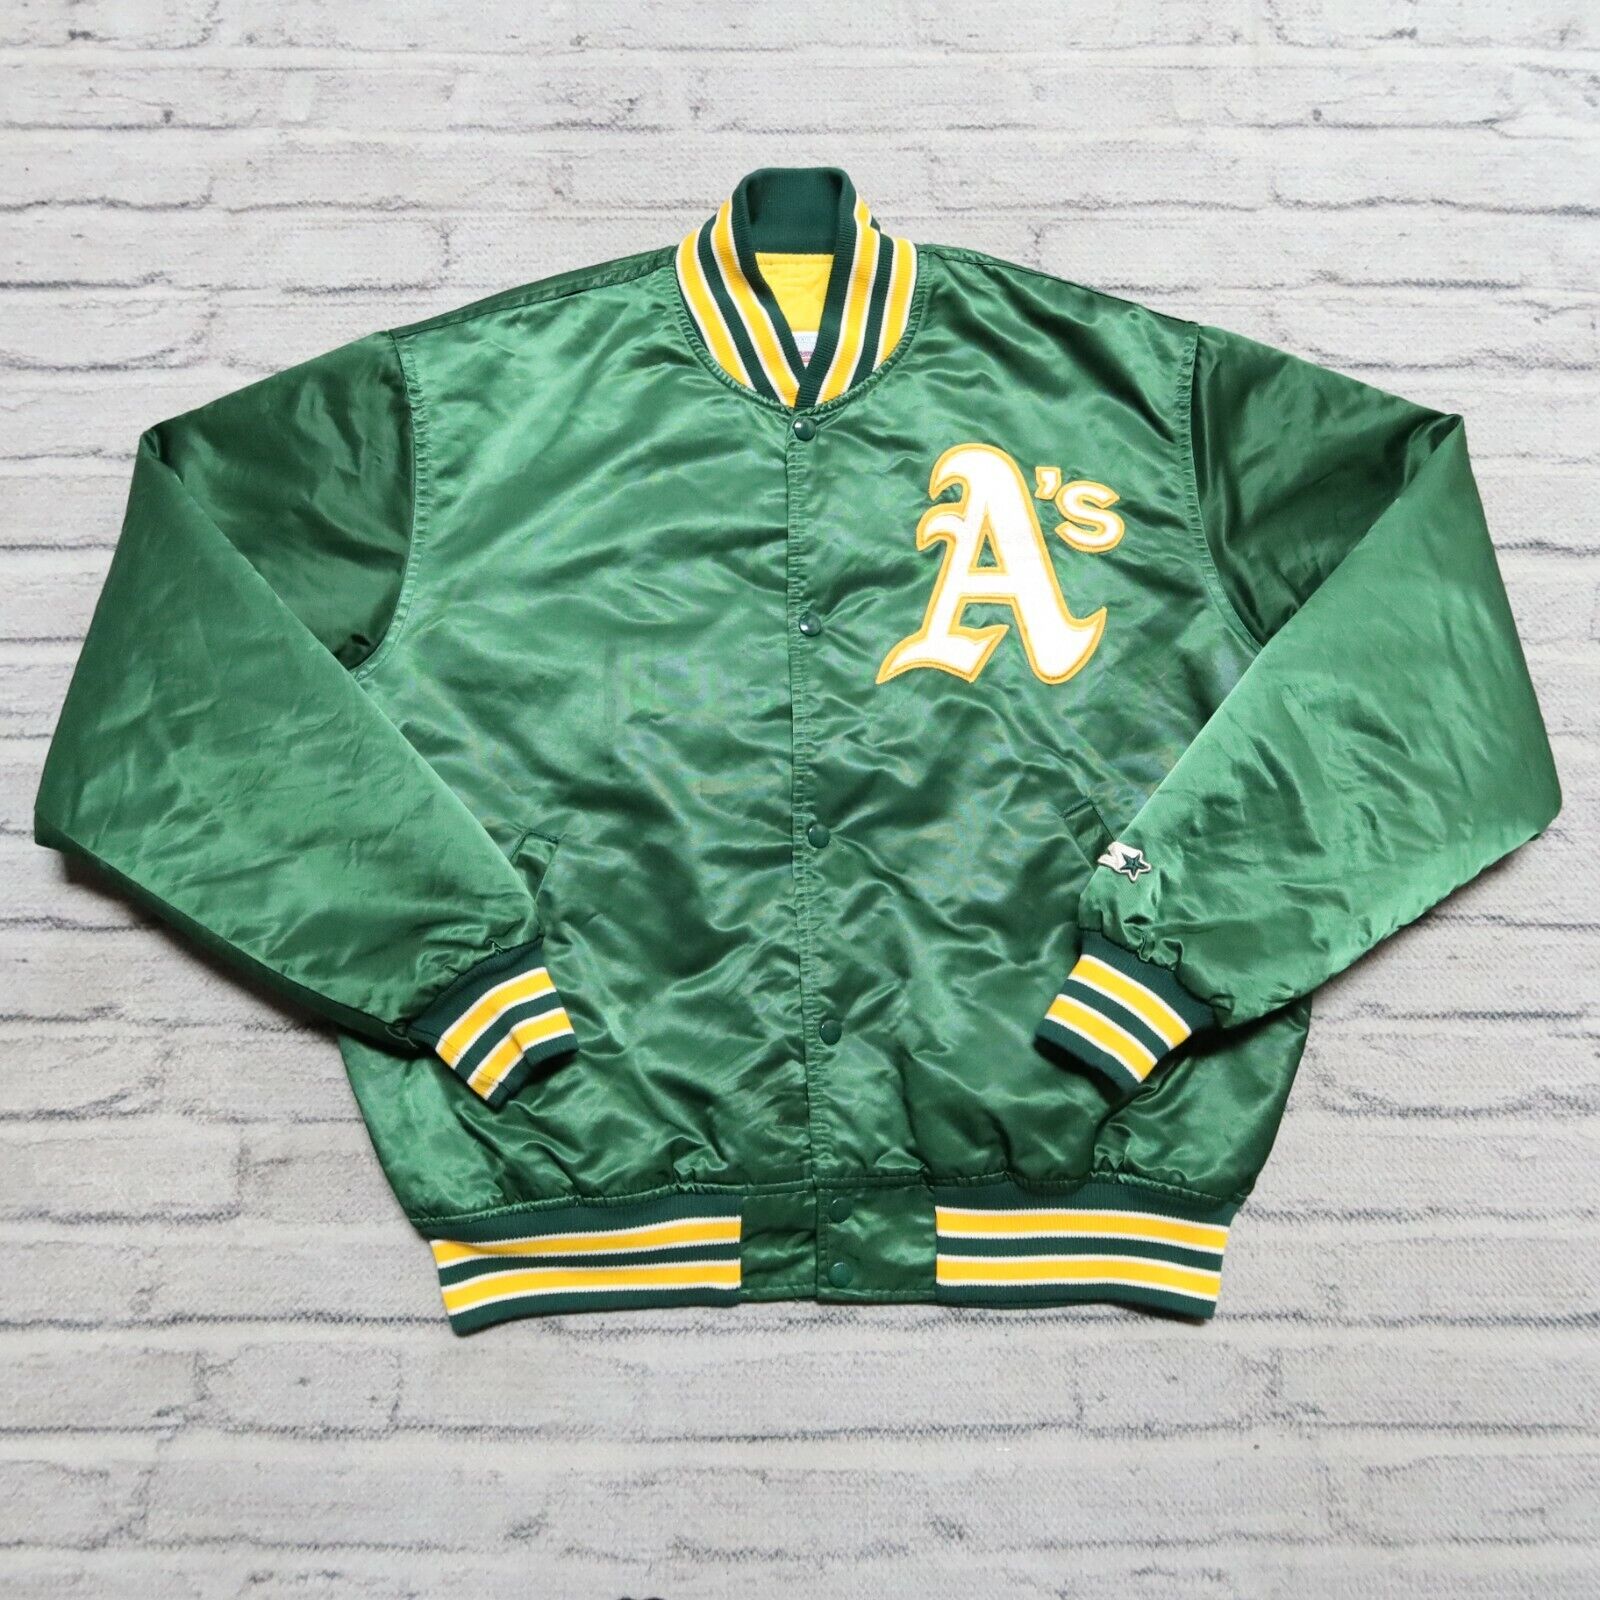 Vintage 90s Oakland Athletics A's Satin Jacket by Starter Size XL Green |  eBay